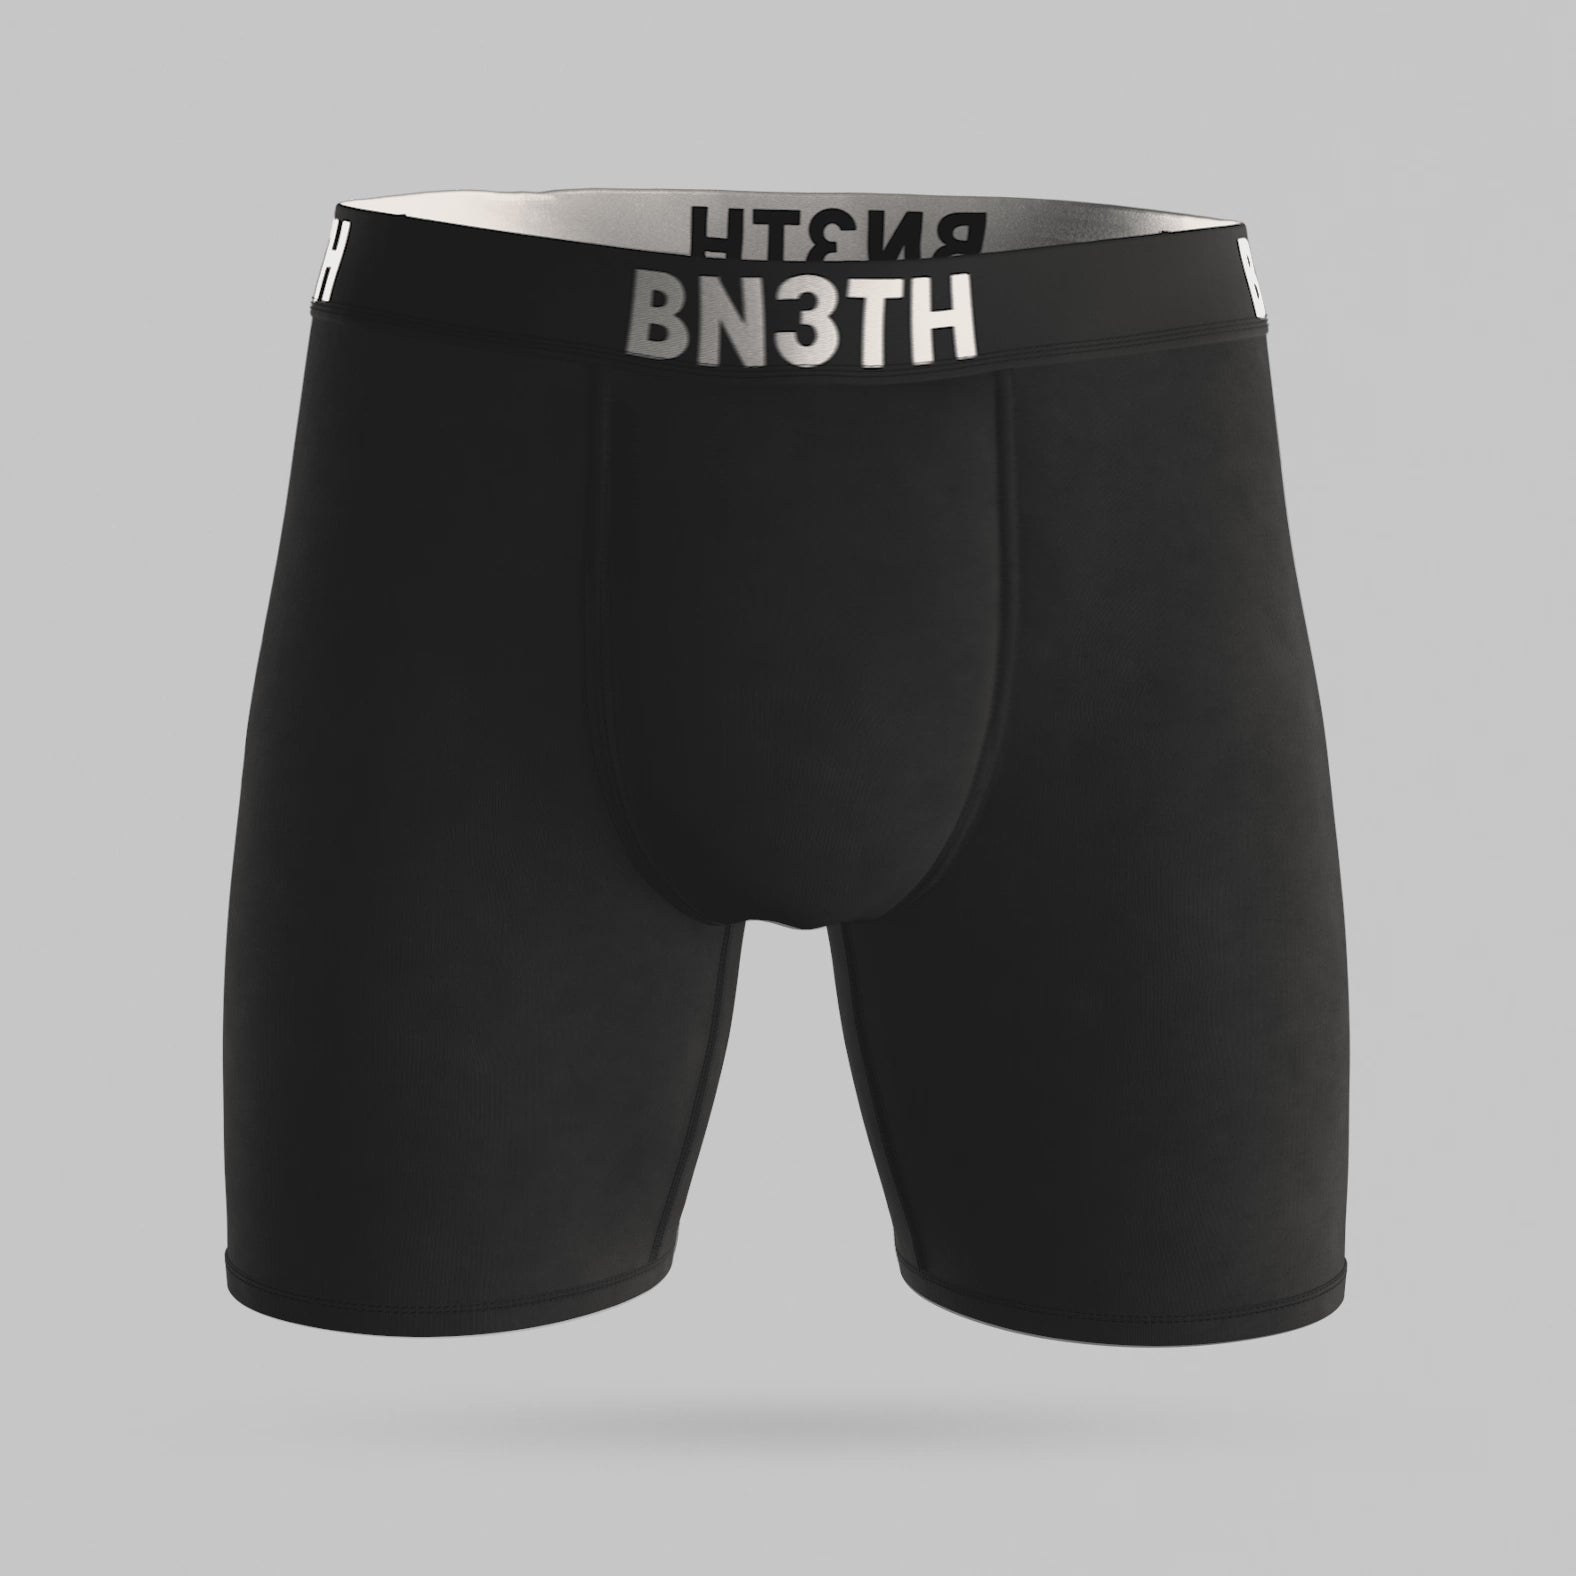 BN3TH Underwear – Foursight Supply Co.